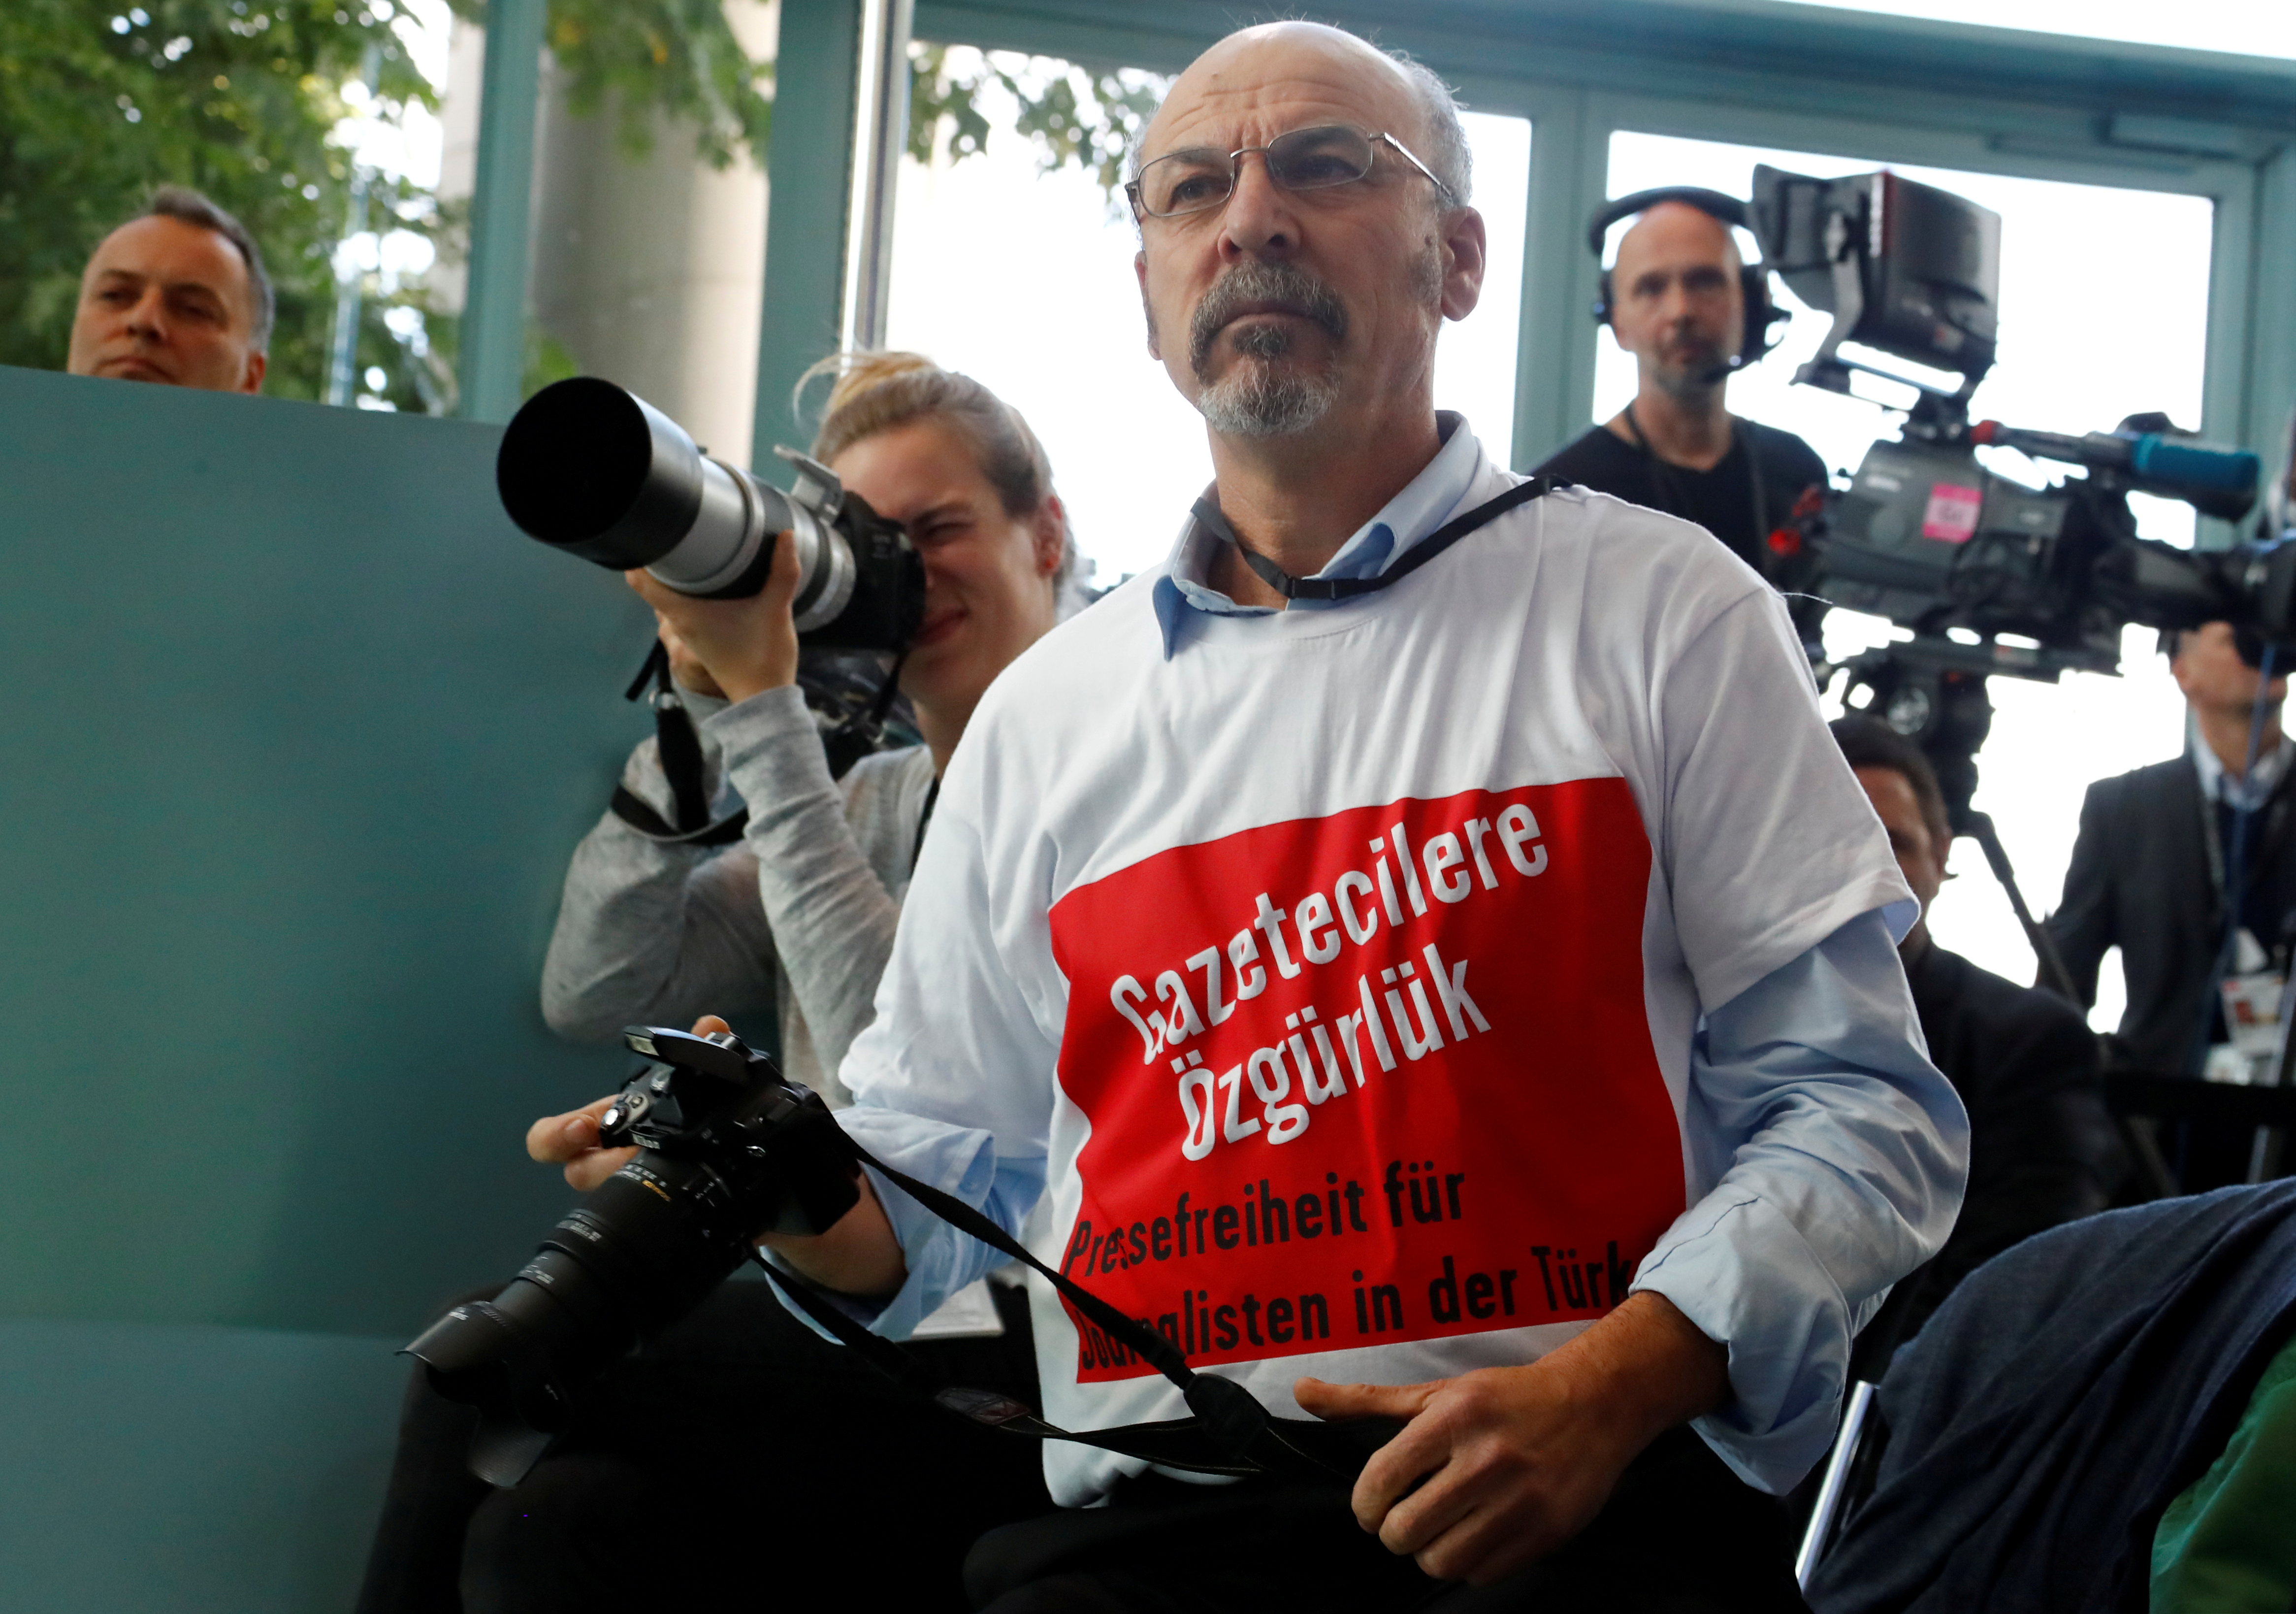 Un journaliste turc porte un tee-shirt "Liberté de presse pour les journalistes en Turquie" pendant une conférence de presse avec Angela Merkel Tayyip Erdogan. Berlin, Germany REUTERS/Fabrizio Bensch 2018